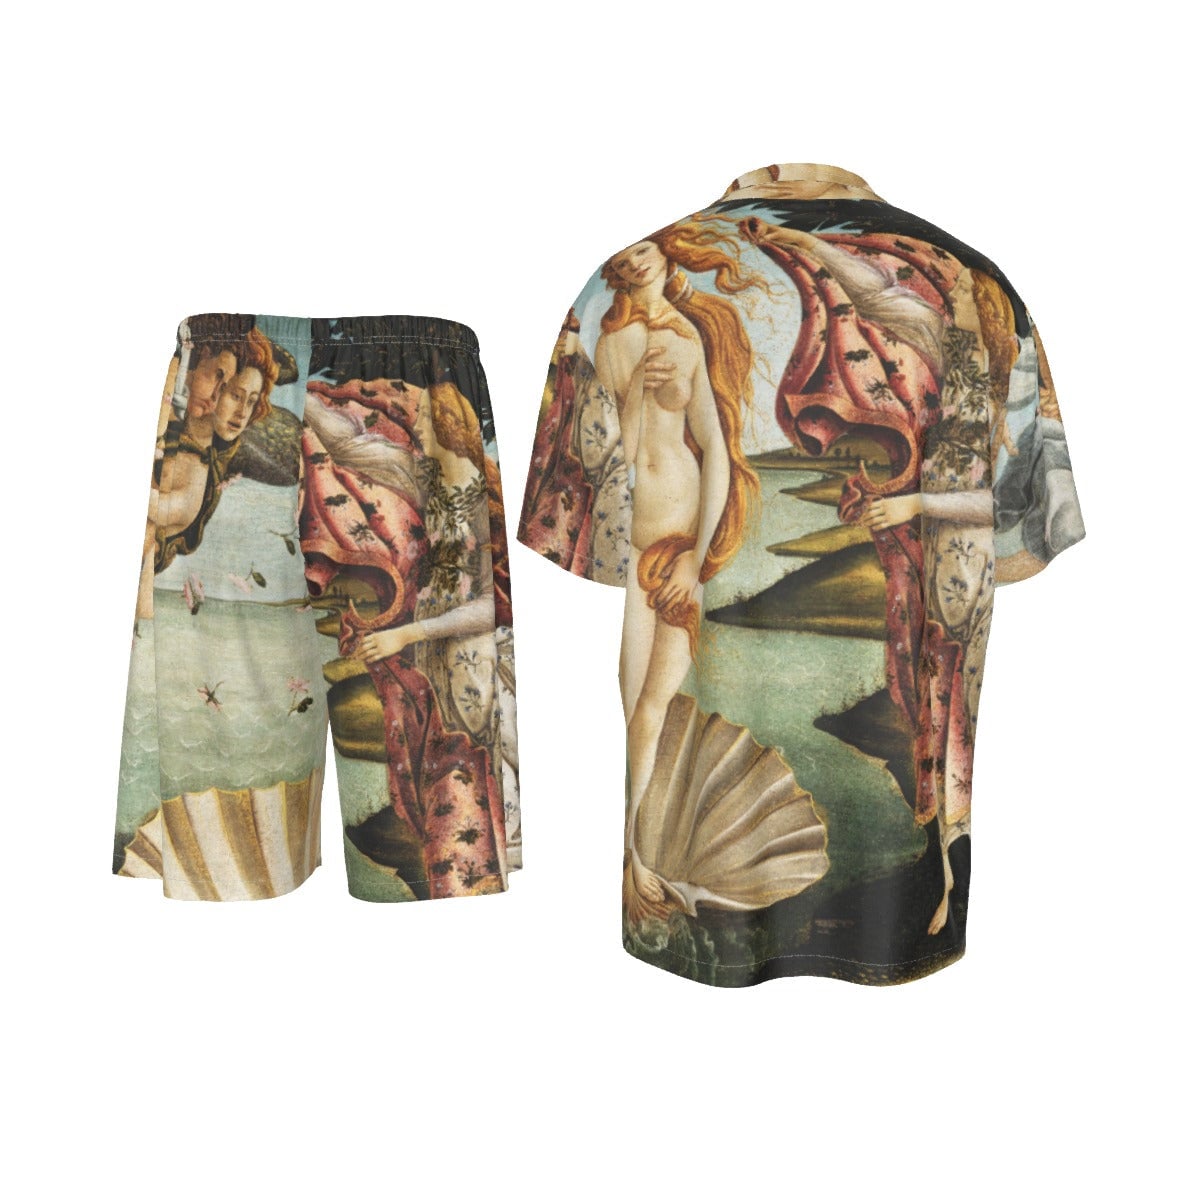 Zrození Venuše Sandro Botticelli obraz hedvábné košile sada obleku